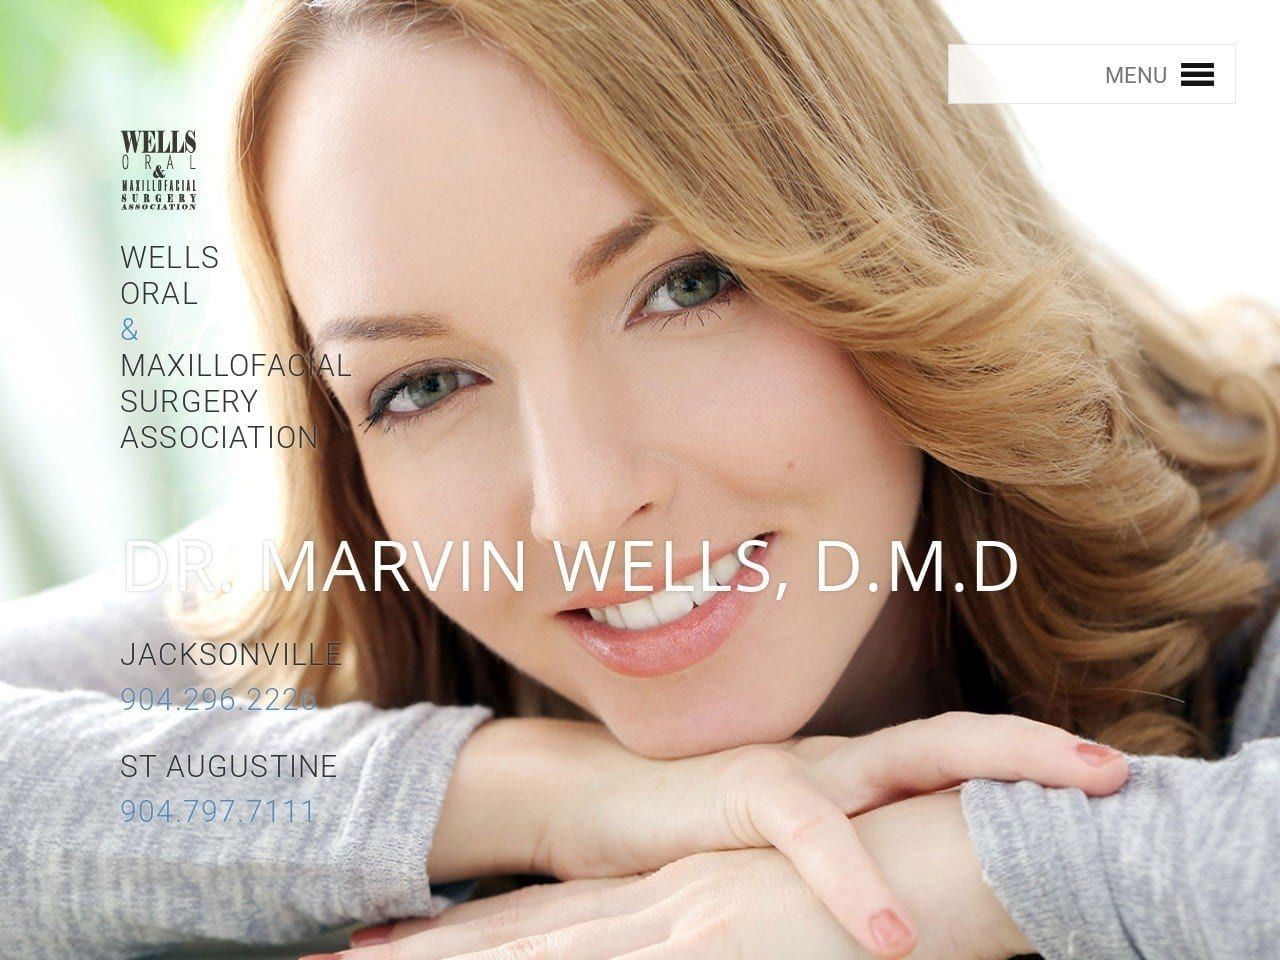 Wells Oral & Maxillofacial Wells Marvin DDS Website Screenshot from drmarvinwells.com